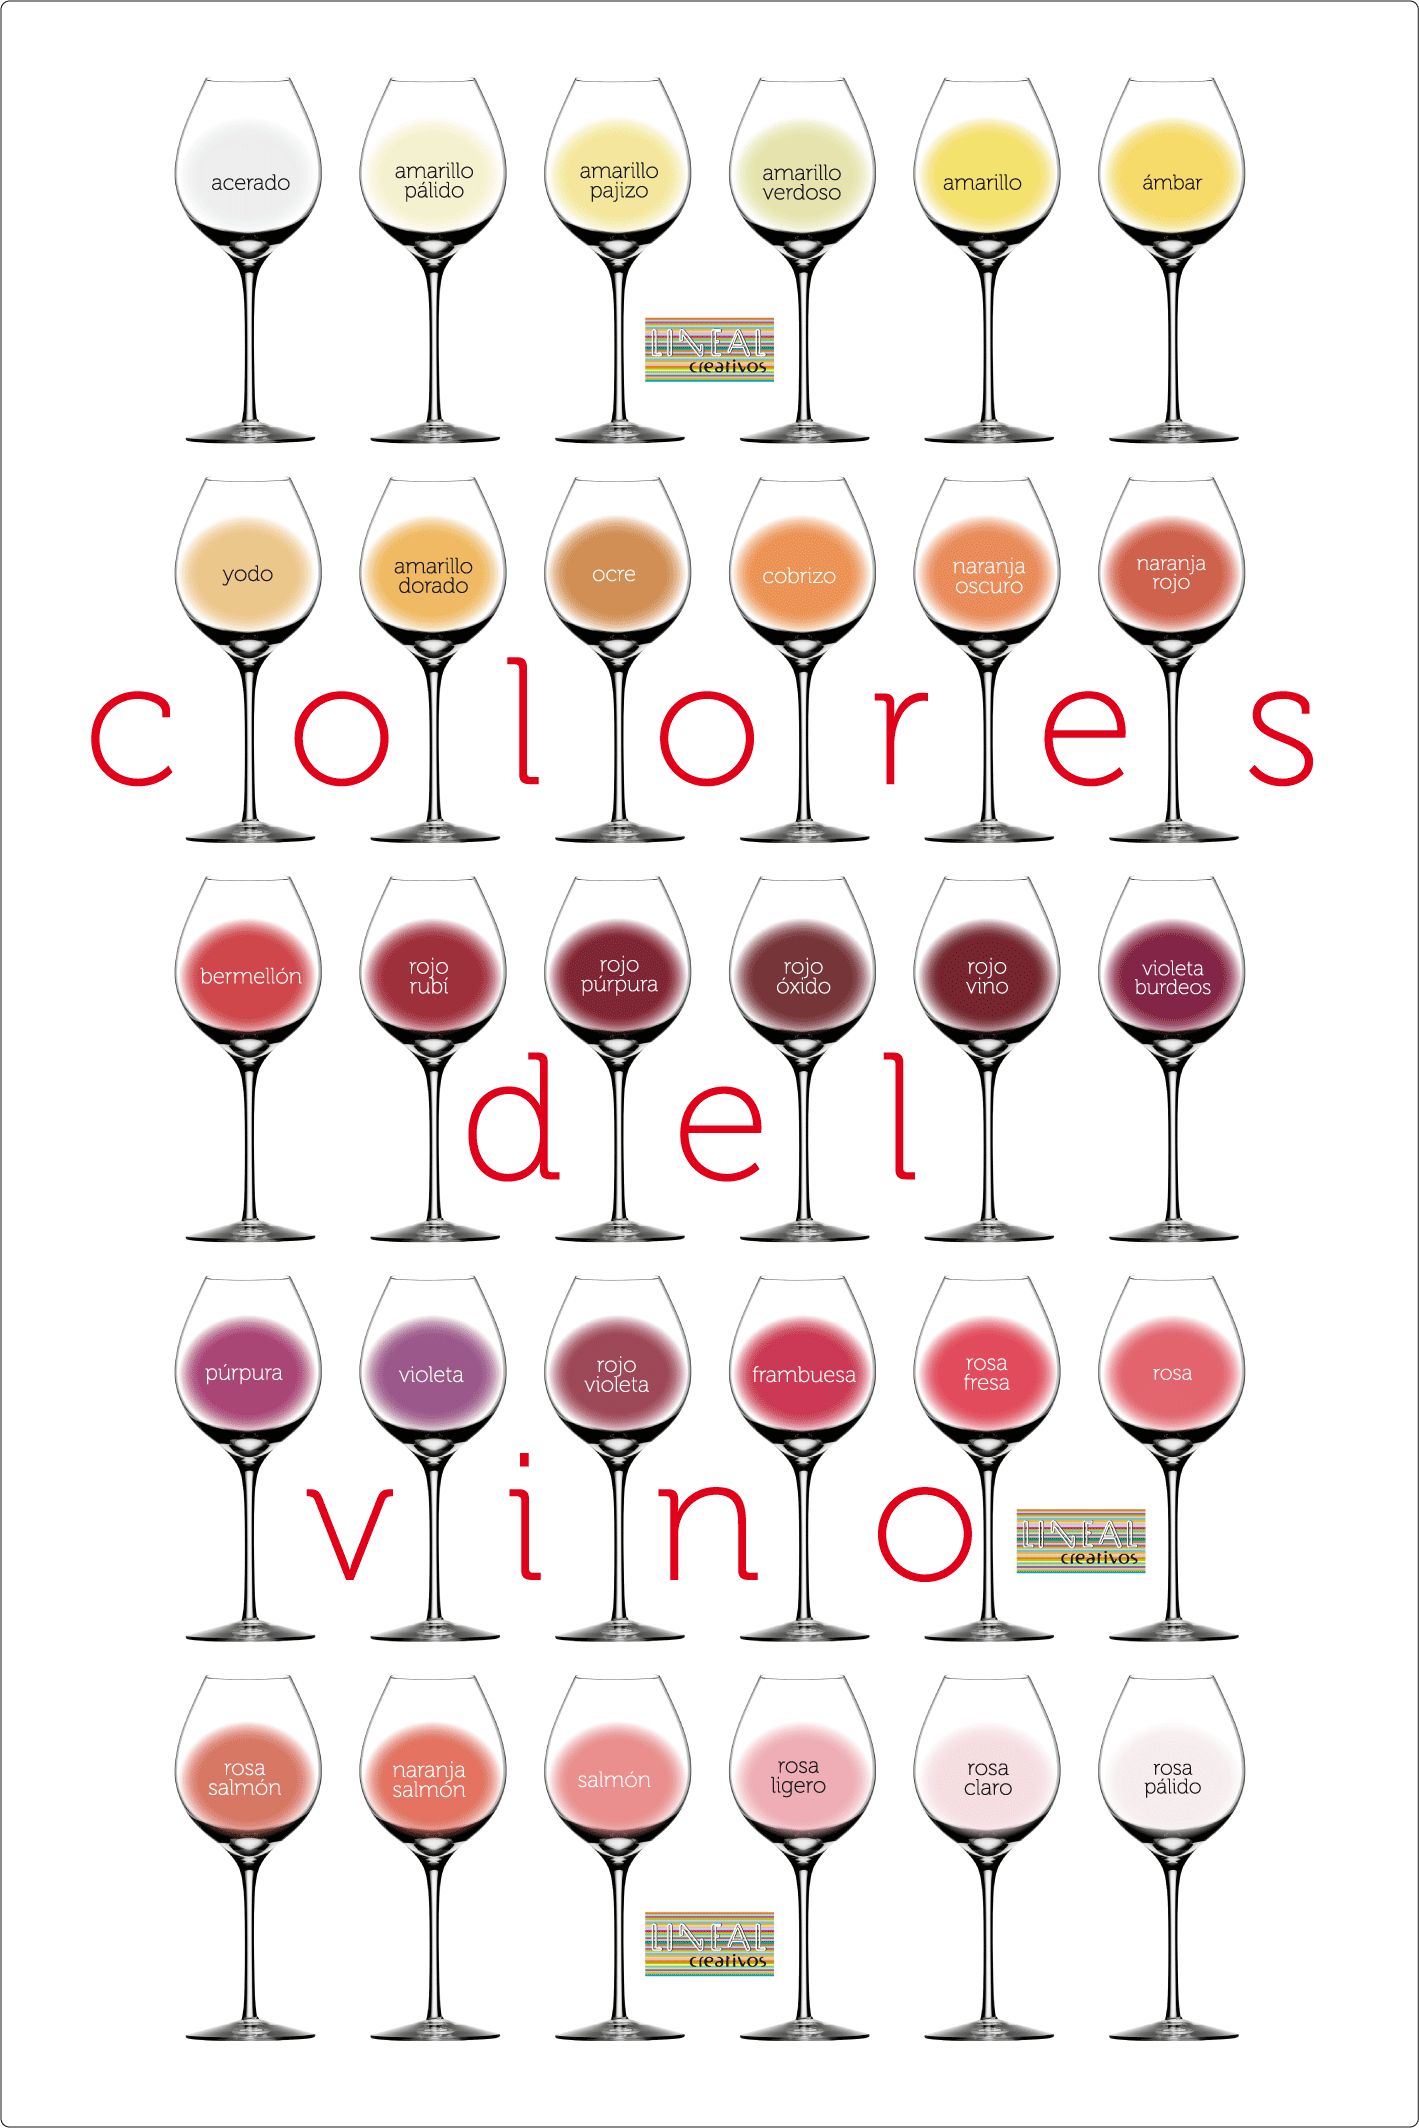 copas-de-colores-del-vino